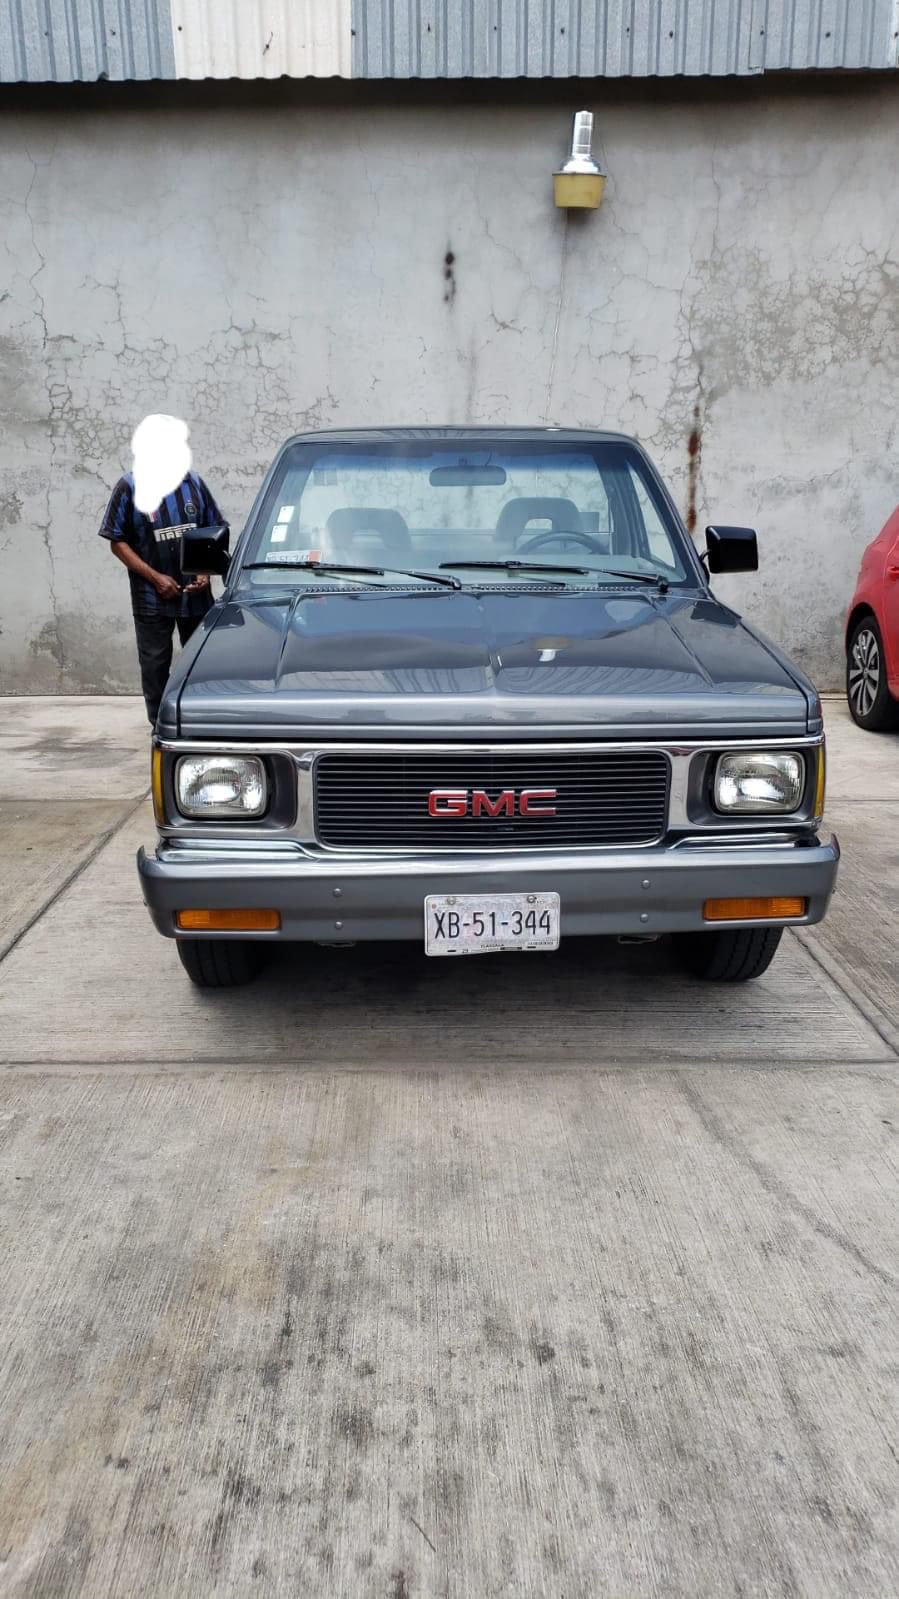 Video desde Puebla: Se pide ayuda a la ciudadanía para localizar camioneta robada en la zona de Angelópolis